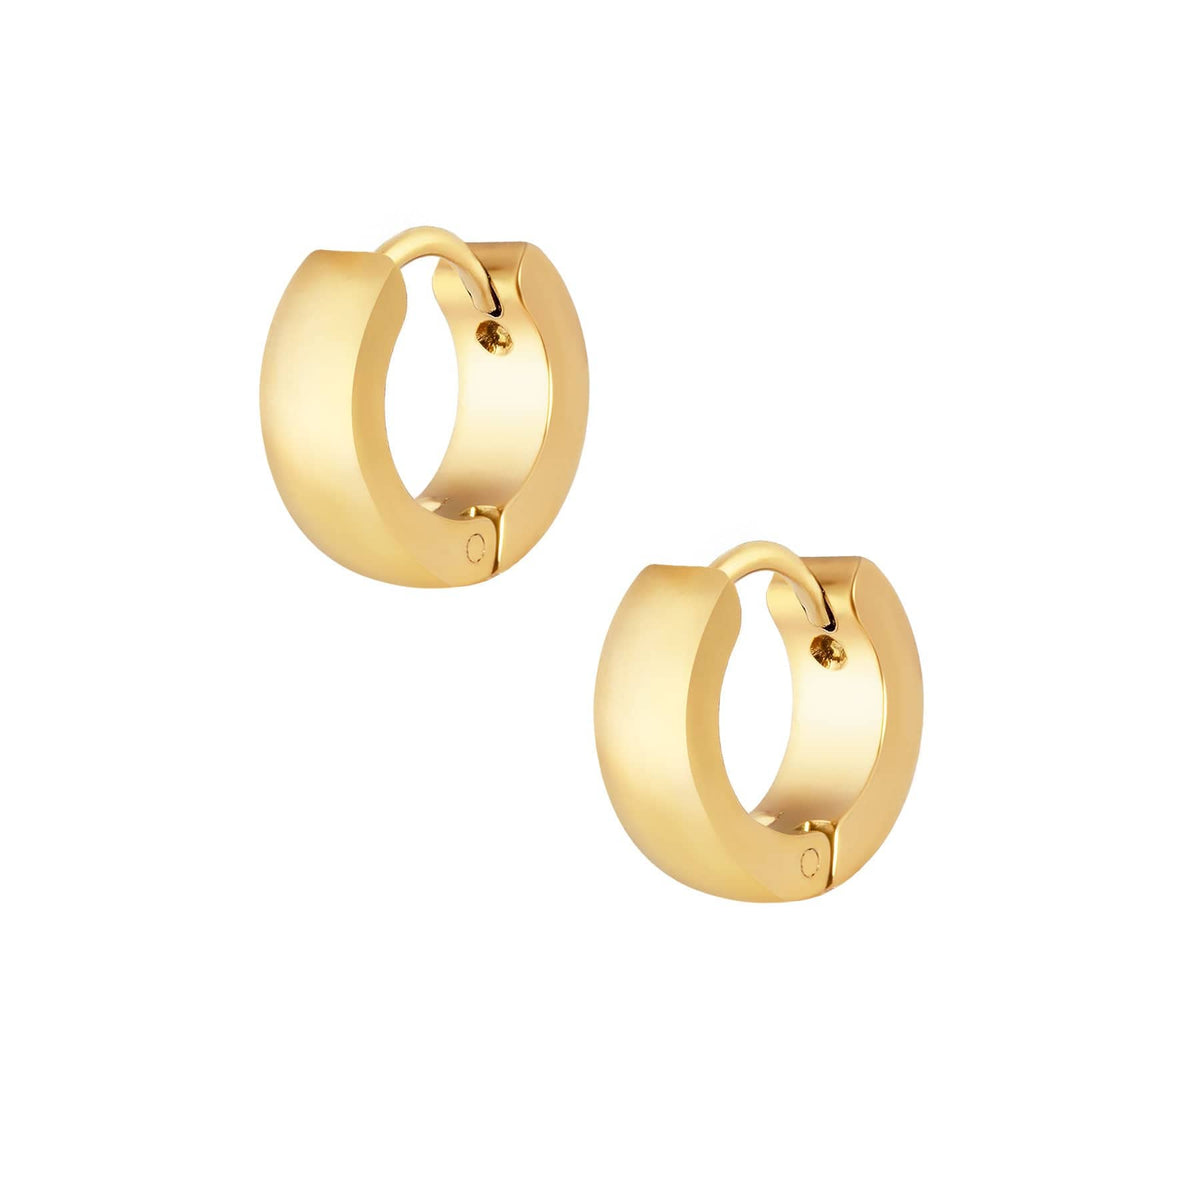 BohoMoon Stainless Steel Cute Hoop Earrings Gold